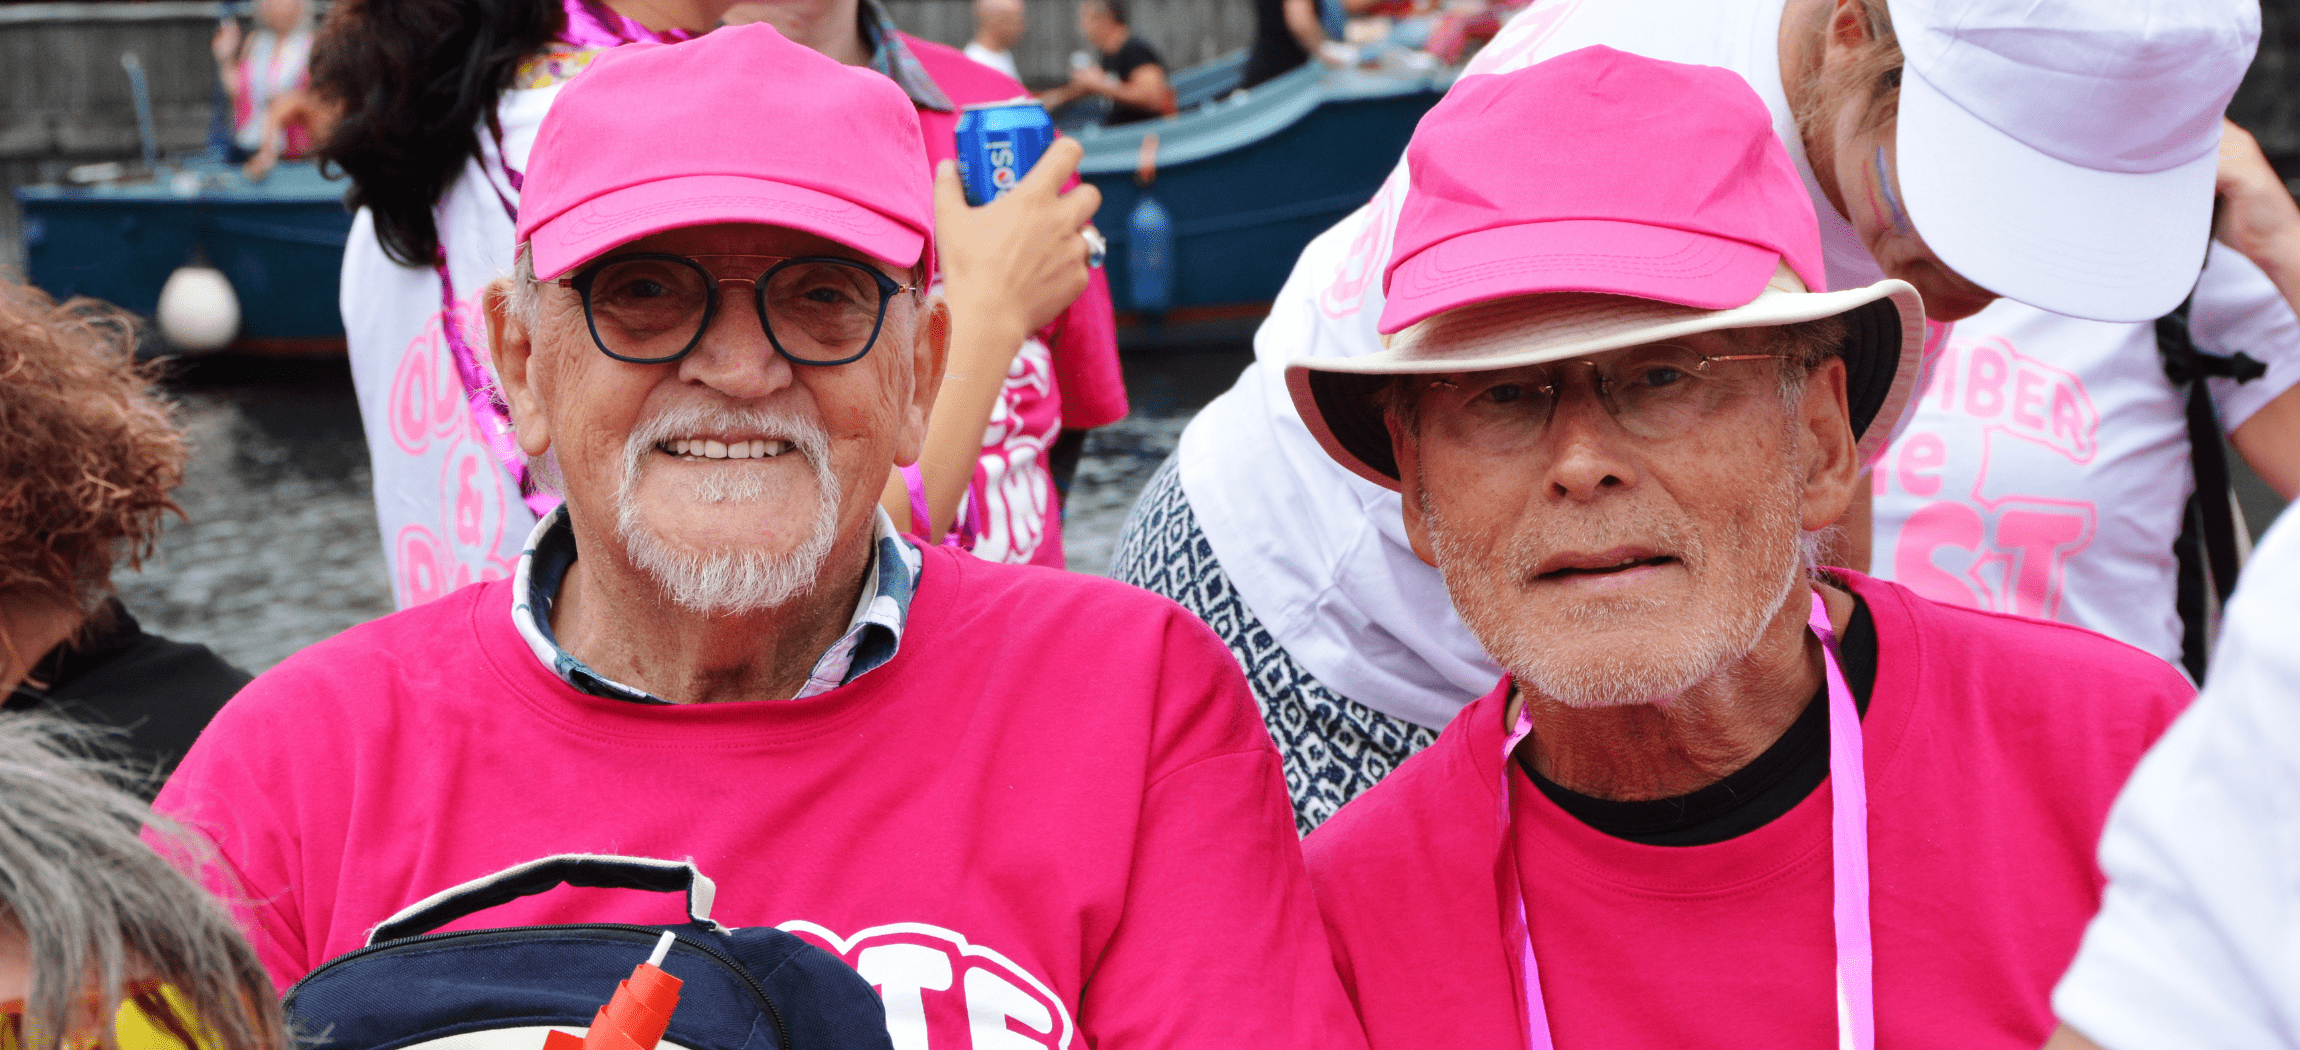 'Roze boot' van Amsterdamse ouderenzorg organisaties tijdens de Canal Pride 2019